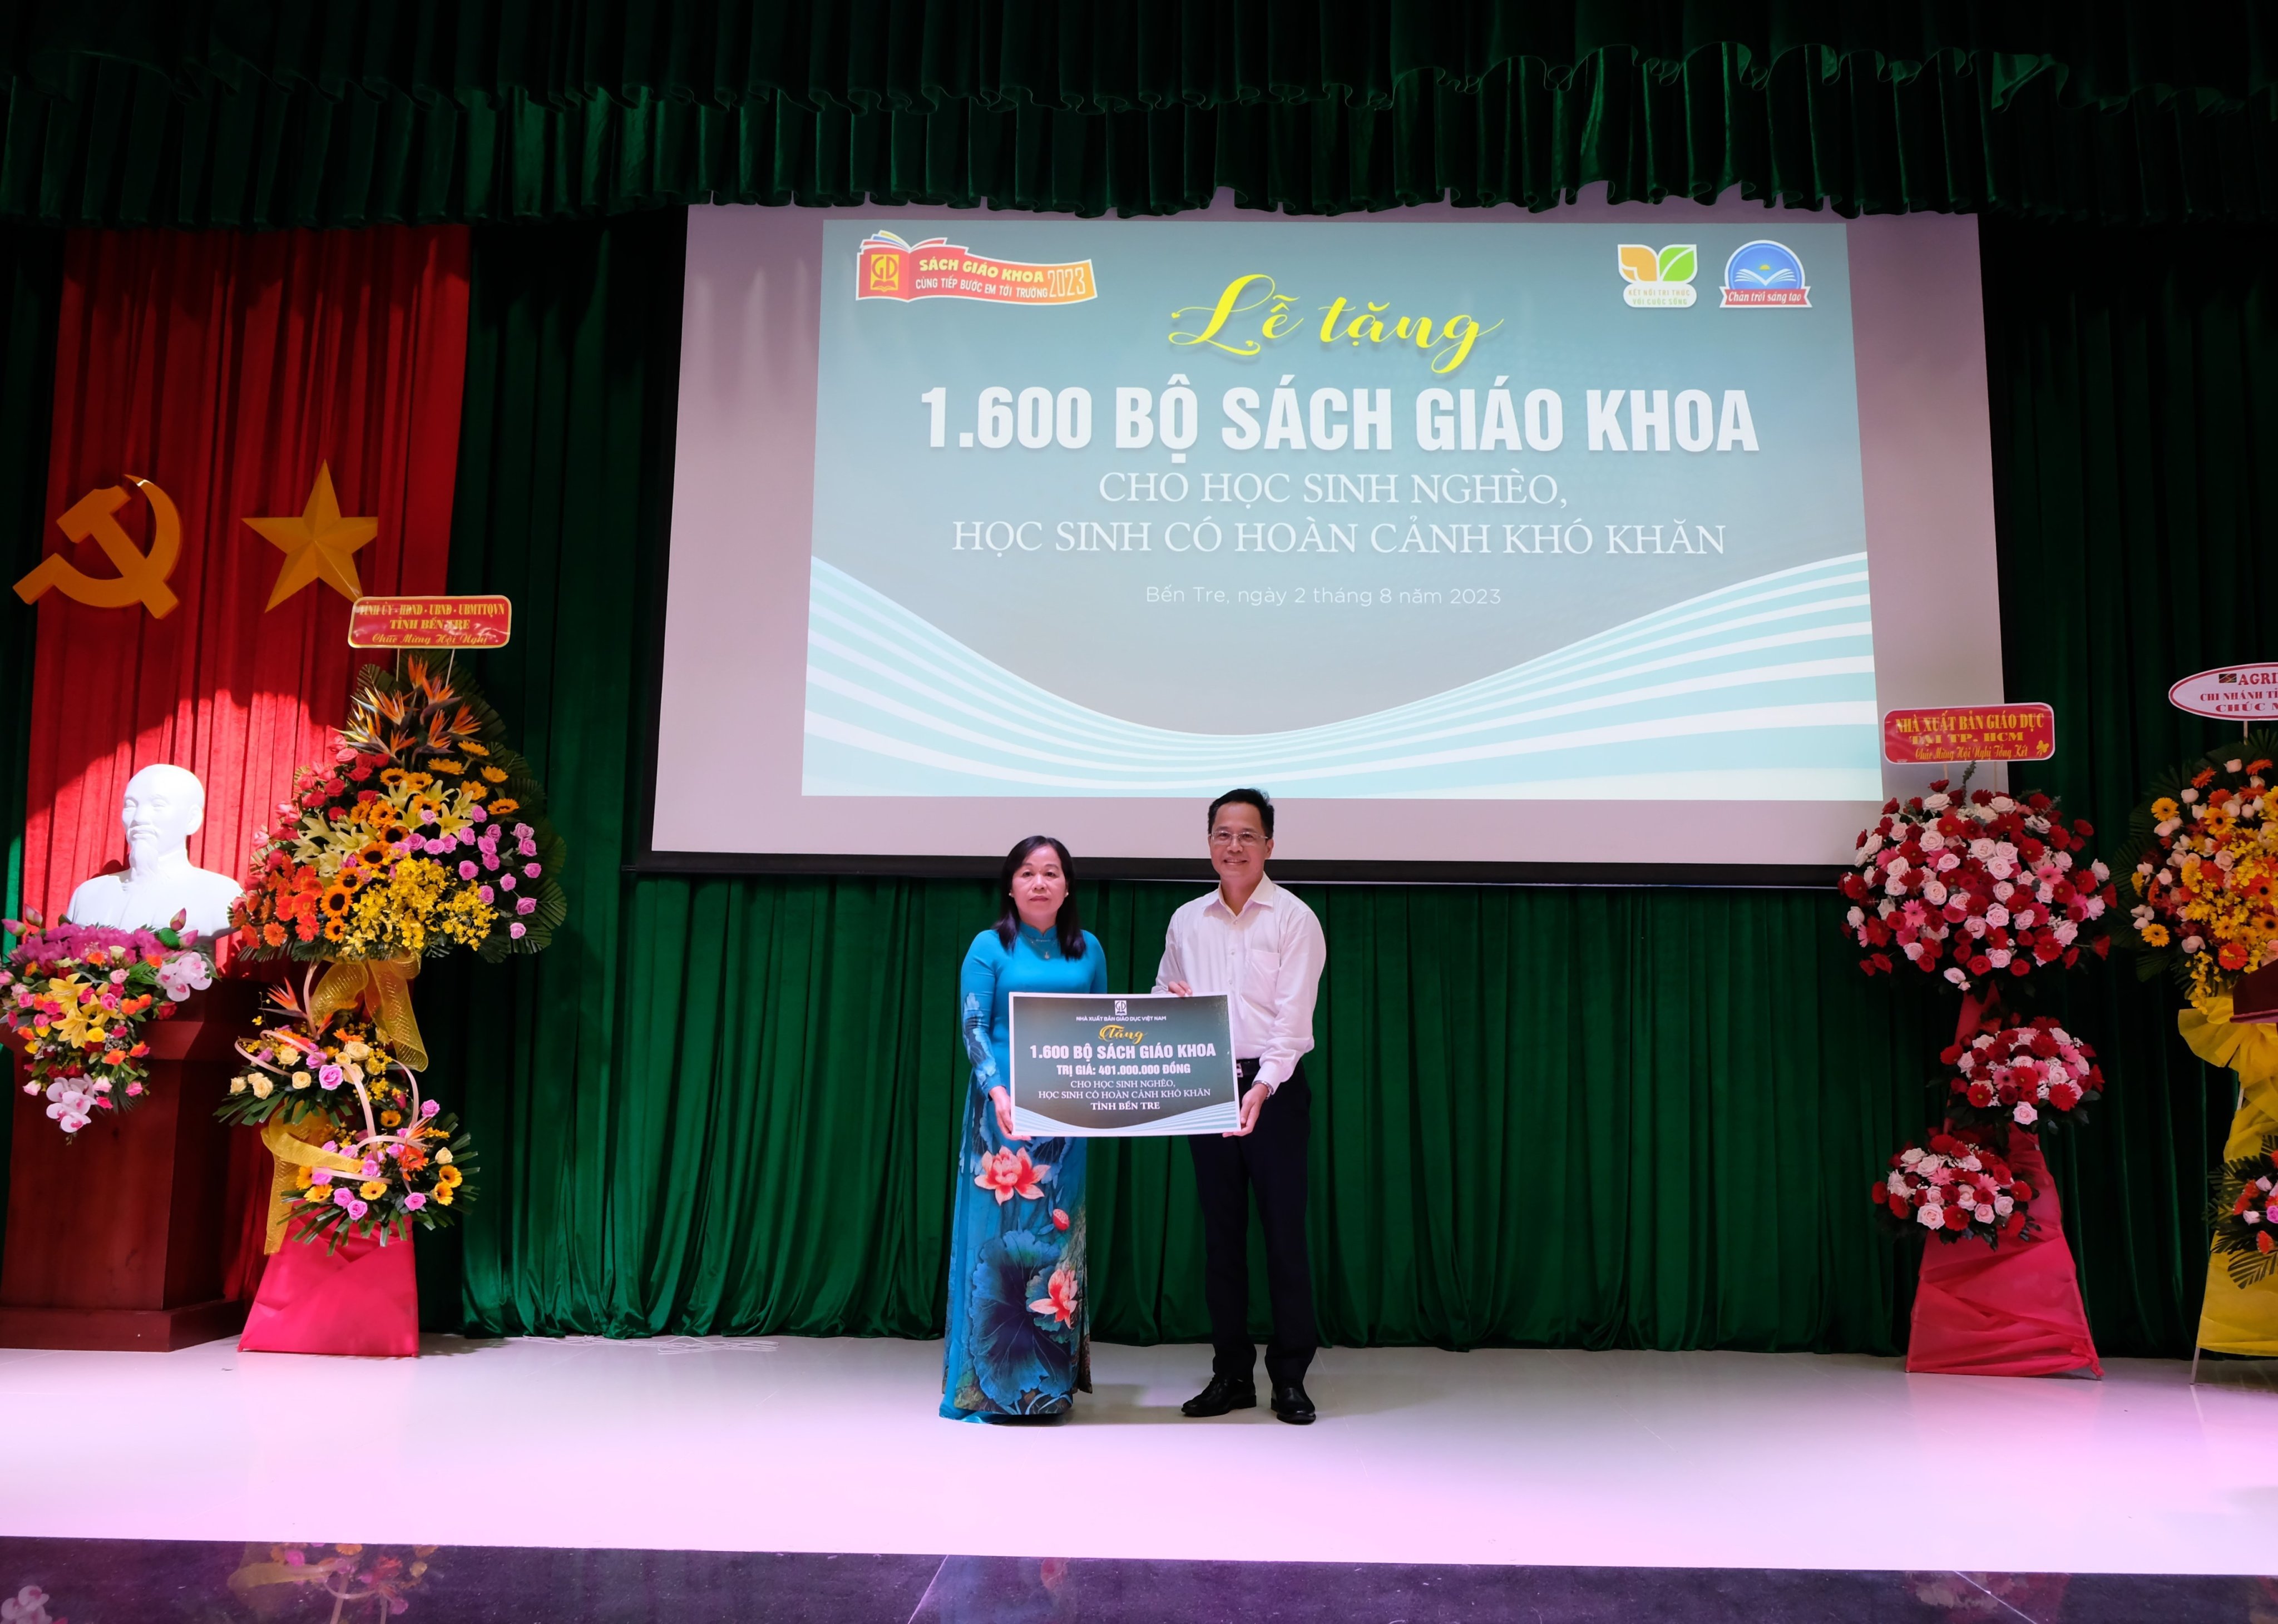 Nhà xuất bản Giáo dục Việt Nam tặng 1.600 bộ sách giáo khoa cho học sinh có hoàn cảnh khó khăn tỉnh Bến Tre